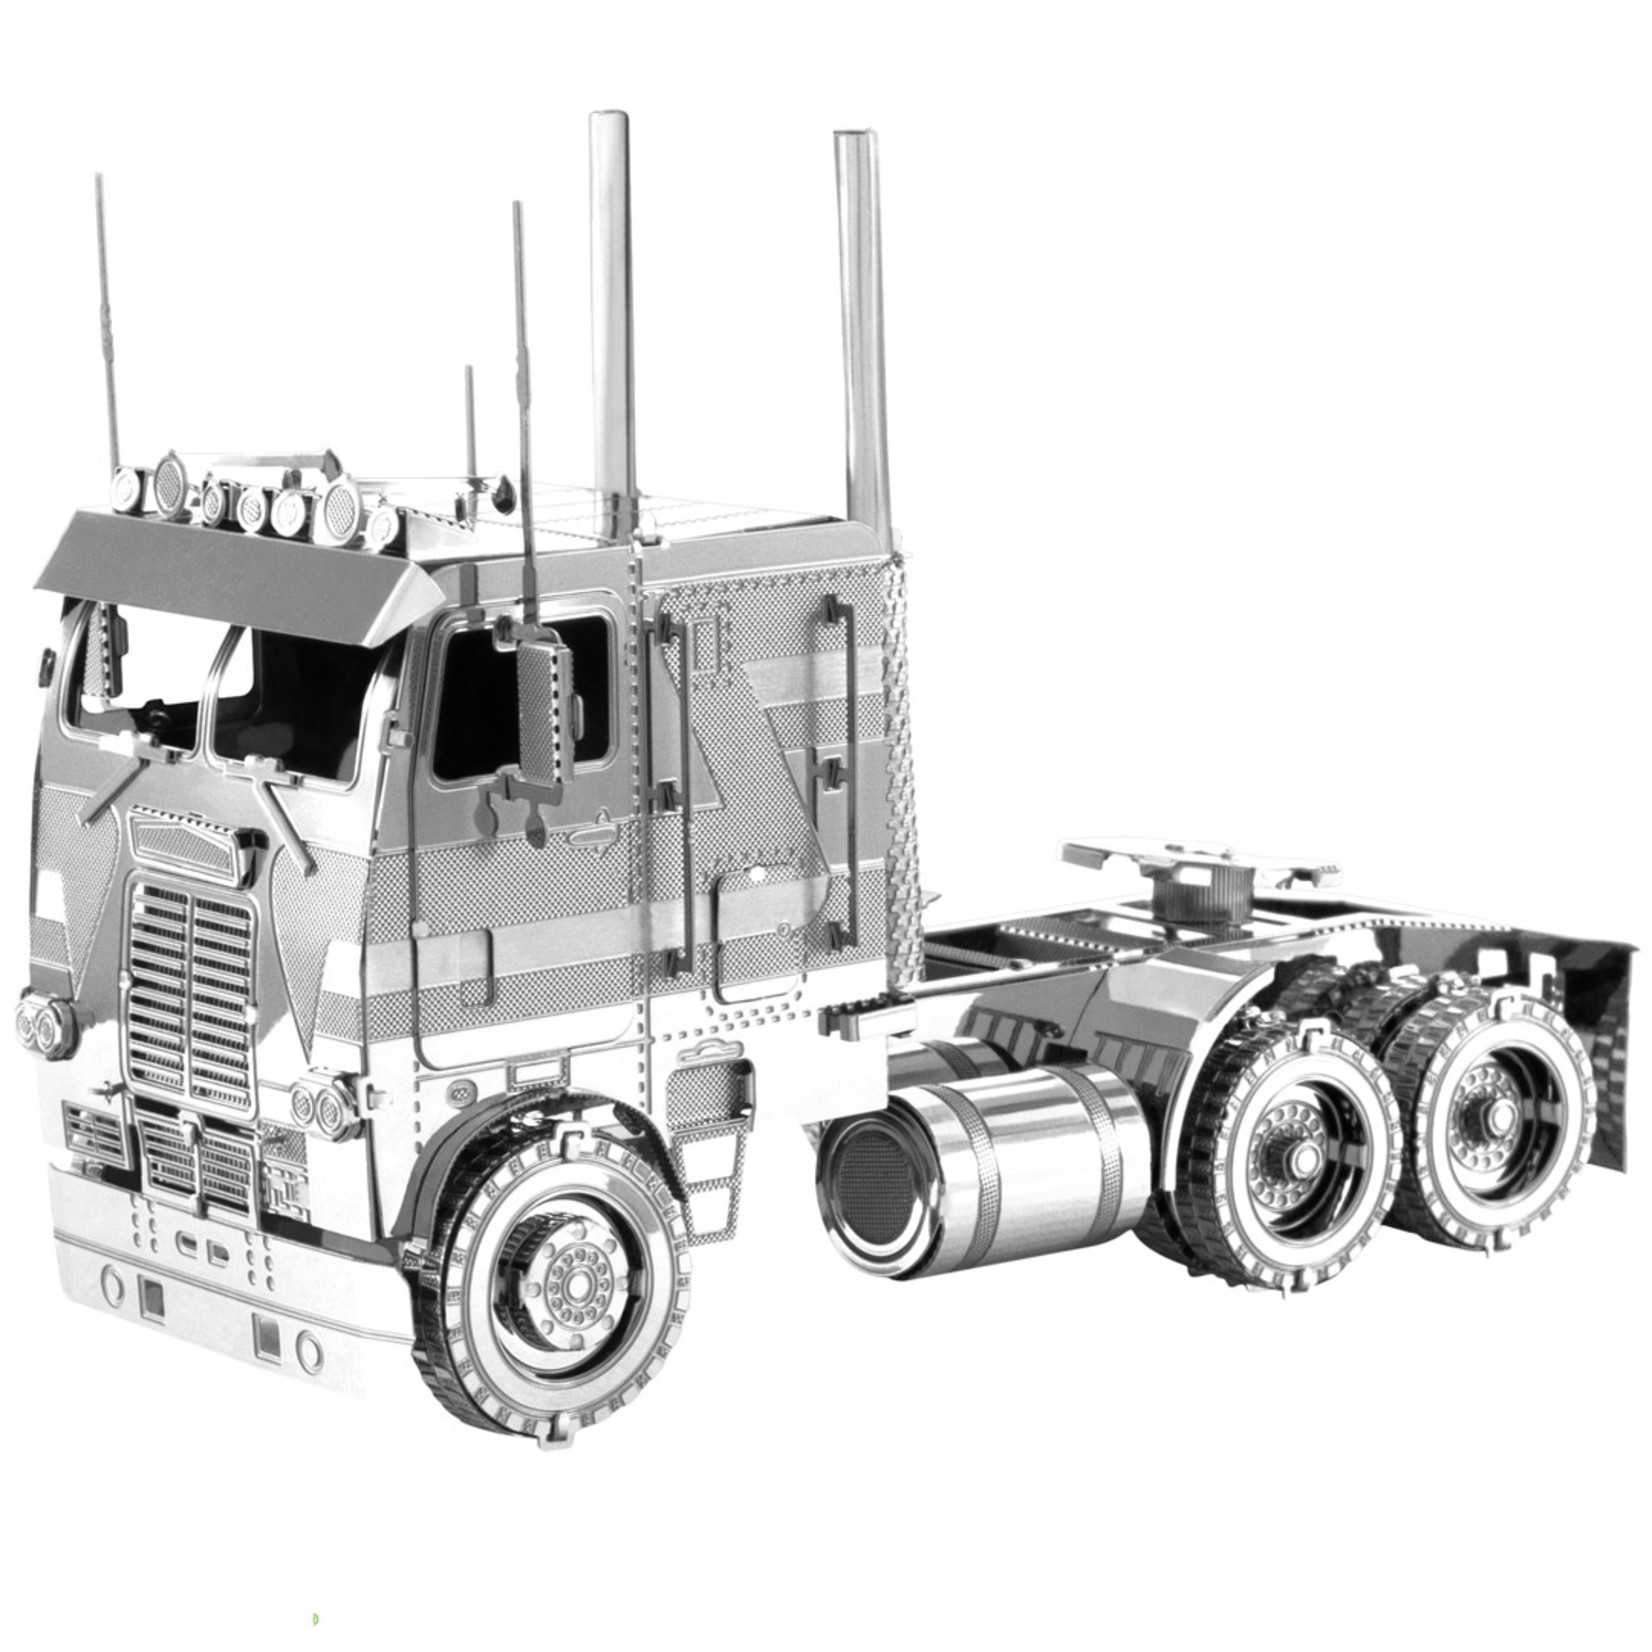 Metal Earth Metal Earth - Freightliner : COE Truck